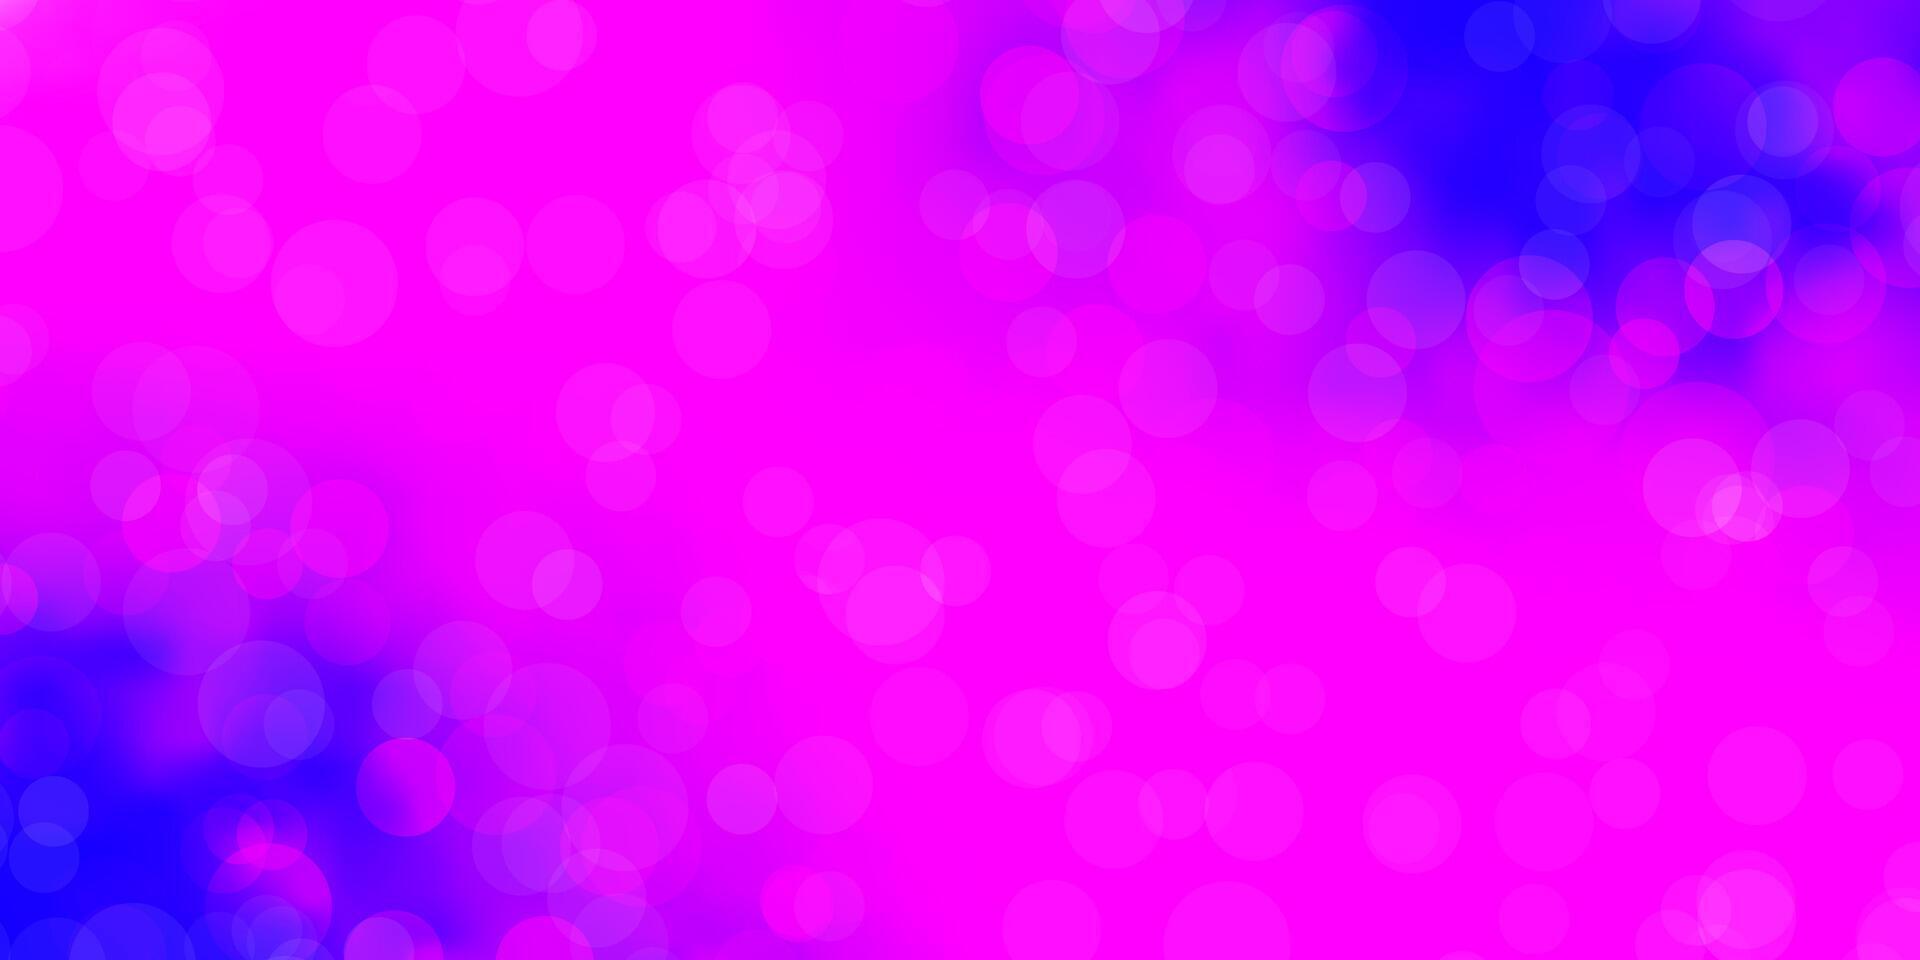 sfondo vettoriale rosa chiaro, blu con cerchi.